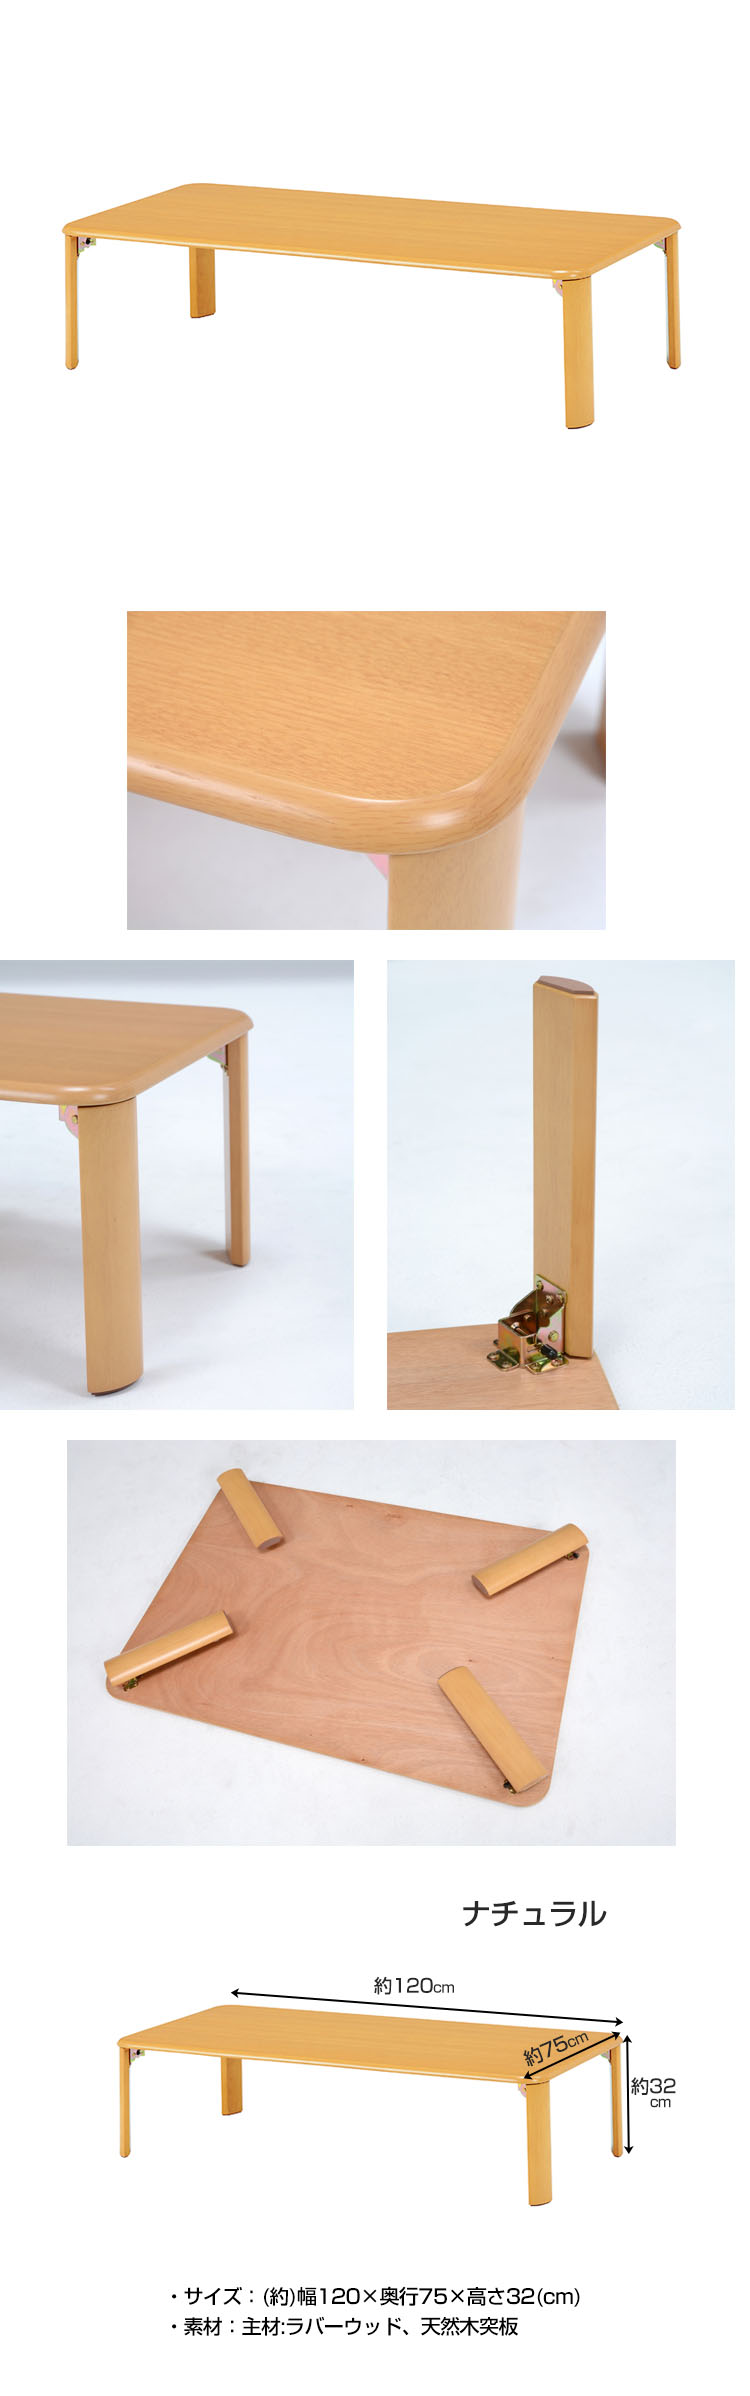 国産低価折れ脚 リビングテーブル 120cm×75cm 脚 折りたたみ ローテーブル ちゃぶ台 木製 おしゃれ テーブル 座卓、ちゃぶ台